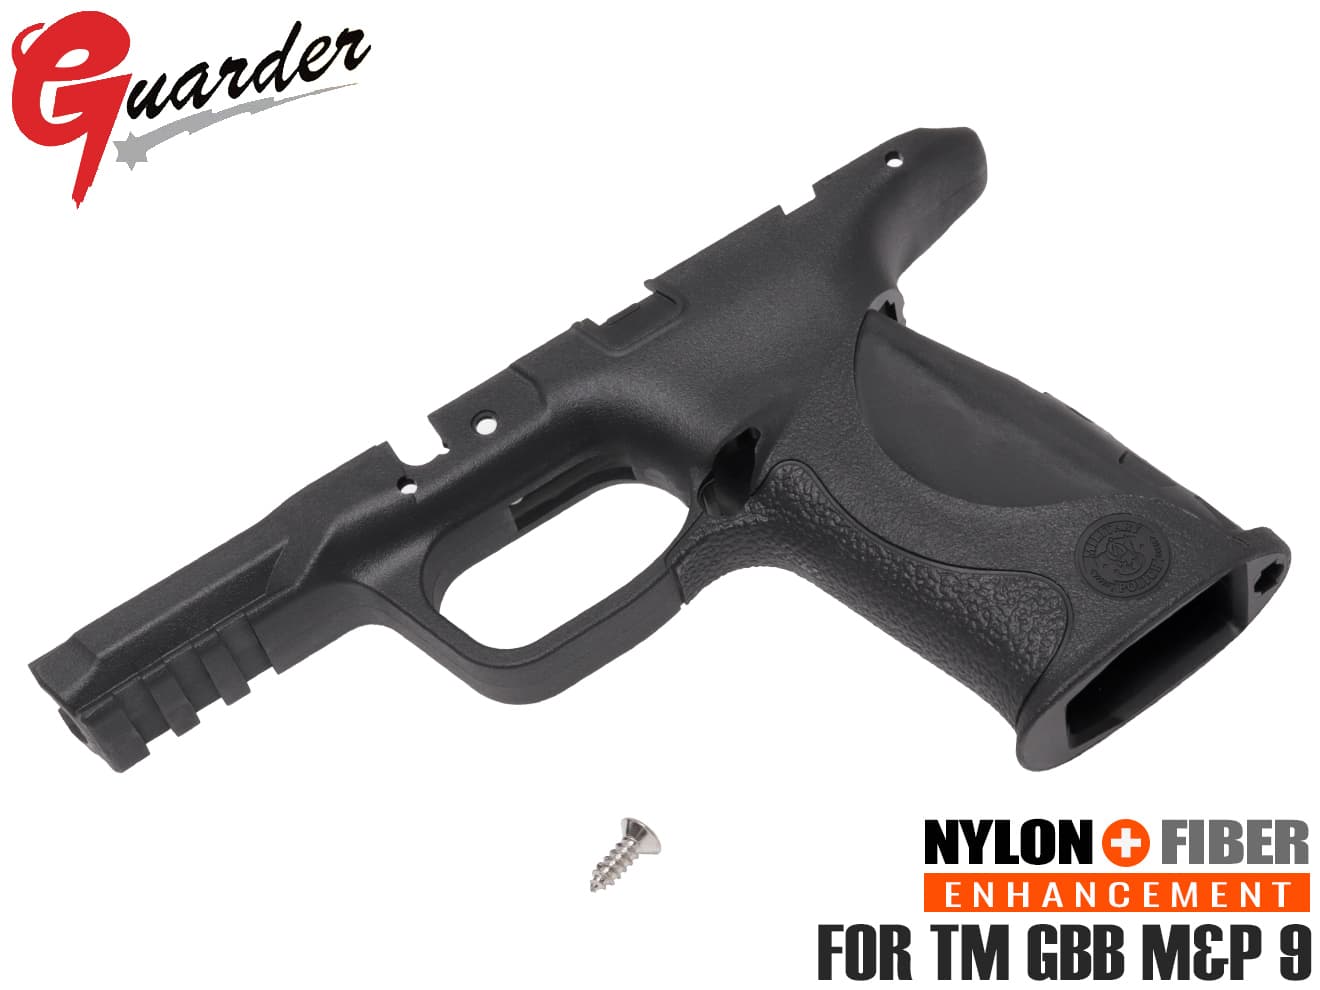 M&P9-05(BK) GUARDER ガーダー商品説明ITEM INFO実銃素材！リアリスティック ナイロンファイバーフレームGUARDER リアルポリマー オリジナルフレーム スタンダード for マルイ M&P 9です。東京マルイ ガスブローバック M&P 9/M&P 9Lシリーズに対応します。実銃と同様、GF(グラスファイバー)配合の強化ナイロン樹脂で製造されているグリップです。基本的にマルイM&P9の寸法通りに制作されておりますが、フレーム右サイドのマルイ刻印がなくなっており、よりリアルな印象を与えてくれます。強化やドレスアップにどうぞ！商品基本情報・スペックITEM SPEC●商品名 ： GUARDER リアルポリマー オリジナルフレーム スタンダード for マルイ M&P 9●商品番号 ： MP9-05(BK)●ブランド ： GUARDER●メーカー品番 ： M&P9-05(BK)●カラー ： BK●対応 ： 東京マルイ GBB M&P 9/M&P9L シリーズ(※Lに装着の場合、トリガーストップスクリューはオミットされます)●重量 ： 80g ●材質 ： ナイロン+ファイバー樹脂注意事項ITEM NOTE∇商品固有の注意事項※写真1枚目以外の部品は付属しません。※取付には分解・整備の知識が必要になります。また個体差や相性により、若干のすり合わせや加工が必要な場合がございます。※M&P9 Lに装着の場合、トリガーストップスクリューはオミットされます。∇ご購入時の留意事項商品はすべて点検してからのお届けになります。商品によってはパッケージの開封等を行う場合もございますことをご了承ください。※商品には万全を記しておりますが、万一不備な点がございましたら、お手数ですがお問い合わせフォームにてご連絡頂ますようお願い致します。なお、海外製品につきましては、輸入時についた若干の傷、痛み等が見られる場合がございます。 国内製品のような完全品をお求めの方はご遠慮下さい。※商品が適合外であった場合、またはお客様都合による交換・返品・返金は出来ません。よくお確かめの上、ご購入下さい。※モニター環境により、実際の商品の色と若干異なる場合がございますのでご了承下さい。※他サイトでも同時販売の為売り切れの際はご了承下さい。※売り切れの際は早急にご連絡させて頂きます。（当社休業日を除く）関連商品RELATED ITEMGUARDER オリジナル フレーム for マルイ M&P9 スタンダード FDE[MP9-05(FDE)]GUARDER リアルポリマー オリジナルフレーム M&P 9[MP9-04(BK)]GUARDER リアルポリマー オリジナルフレーム M&P 9[MP9-04(FDE)]GUARDER Performance Center リアリスティック ポリマー フレーム for マルイ M&P 9 BK[MP9-45(BK)]GUARDER Performance Center リアリスティック ポリマー フレーム for マルイ M&P 9 FDE[MP9-45(FDE)]GUARDER スタンダード マガジンベース M&P9[MP9-36(BK)]GUARDER スタンダード マガジンベース M&P9[MP9-36(FDE)]GUARDER スタンダード マガジンリリース M&P9[MP9-37(BK)]GUARDER スタンダード マガジンリリース M&P9[MP9-37(FDE)]GUARDER フレームアッセンブリー テイクダウンツール for マルイ M&P9/M&P9L BK[MP9-51(BK)]GUARDER フレームアッセンブリー テイクダウンツール for マルイ M&P9/M&P9L FDE[MP9-51(FDE)]GUARDER M&P9 ステンレス シリアルナンバープレート BK[MP9-02(BK)]GUARDER スチール ロッキングブロック マルイ M&P9/M&P9L[MP9-46]【検索キーワード】：M&P9-05(BK) ガーダー ミリタリー＆ポリス SMISS&WESSON MILITARY & POLICE ポリマーフレーム ポリマーグリップ 強化フレーム 強化 耐久性アップ ポリマー樹脂 MP グリップ GRIP フレーム 交換用 スミス＆ウェッソン